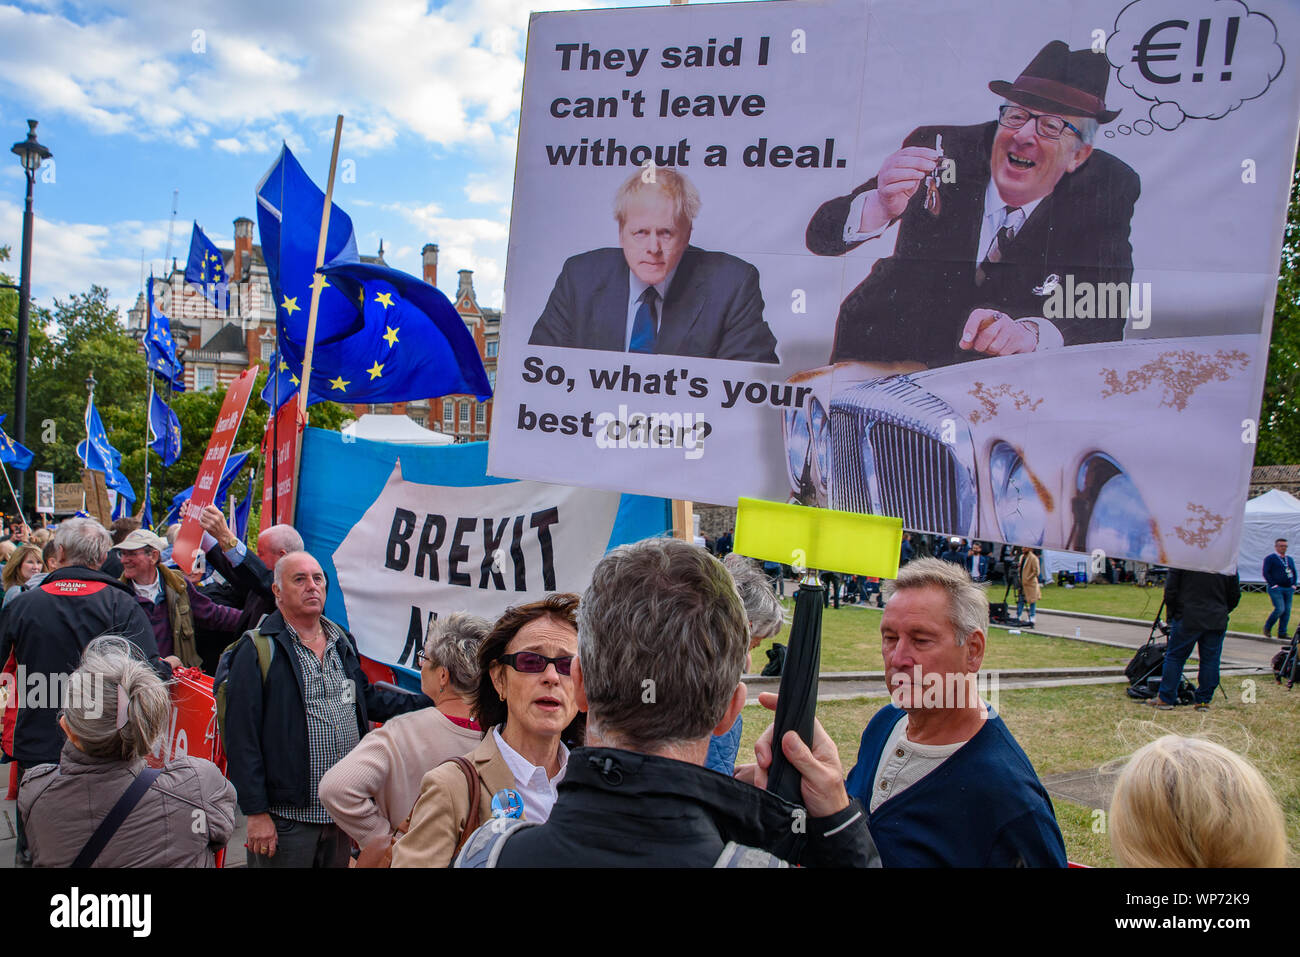 Persone che protestano contro la no-deal Brexit, Boris Johnson il Primo Ministro del Regno Unito e il governo del Regno Unito a Piazza del Parlamento, Londra Foto Stock